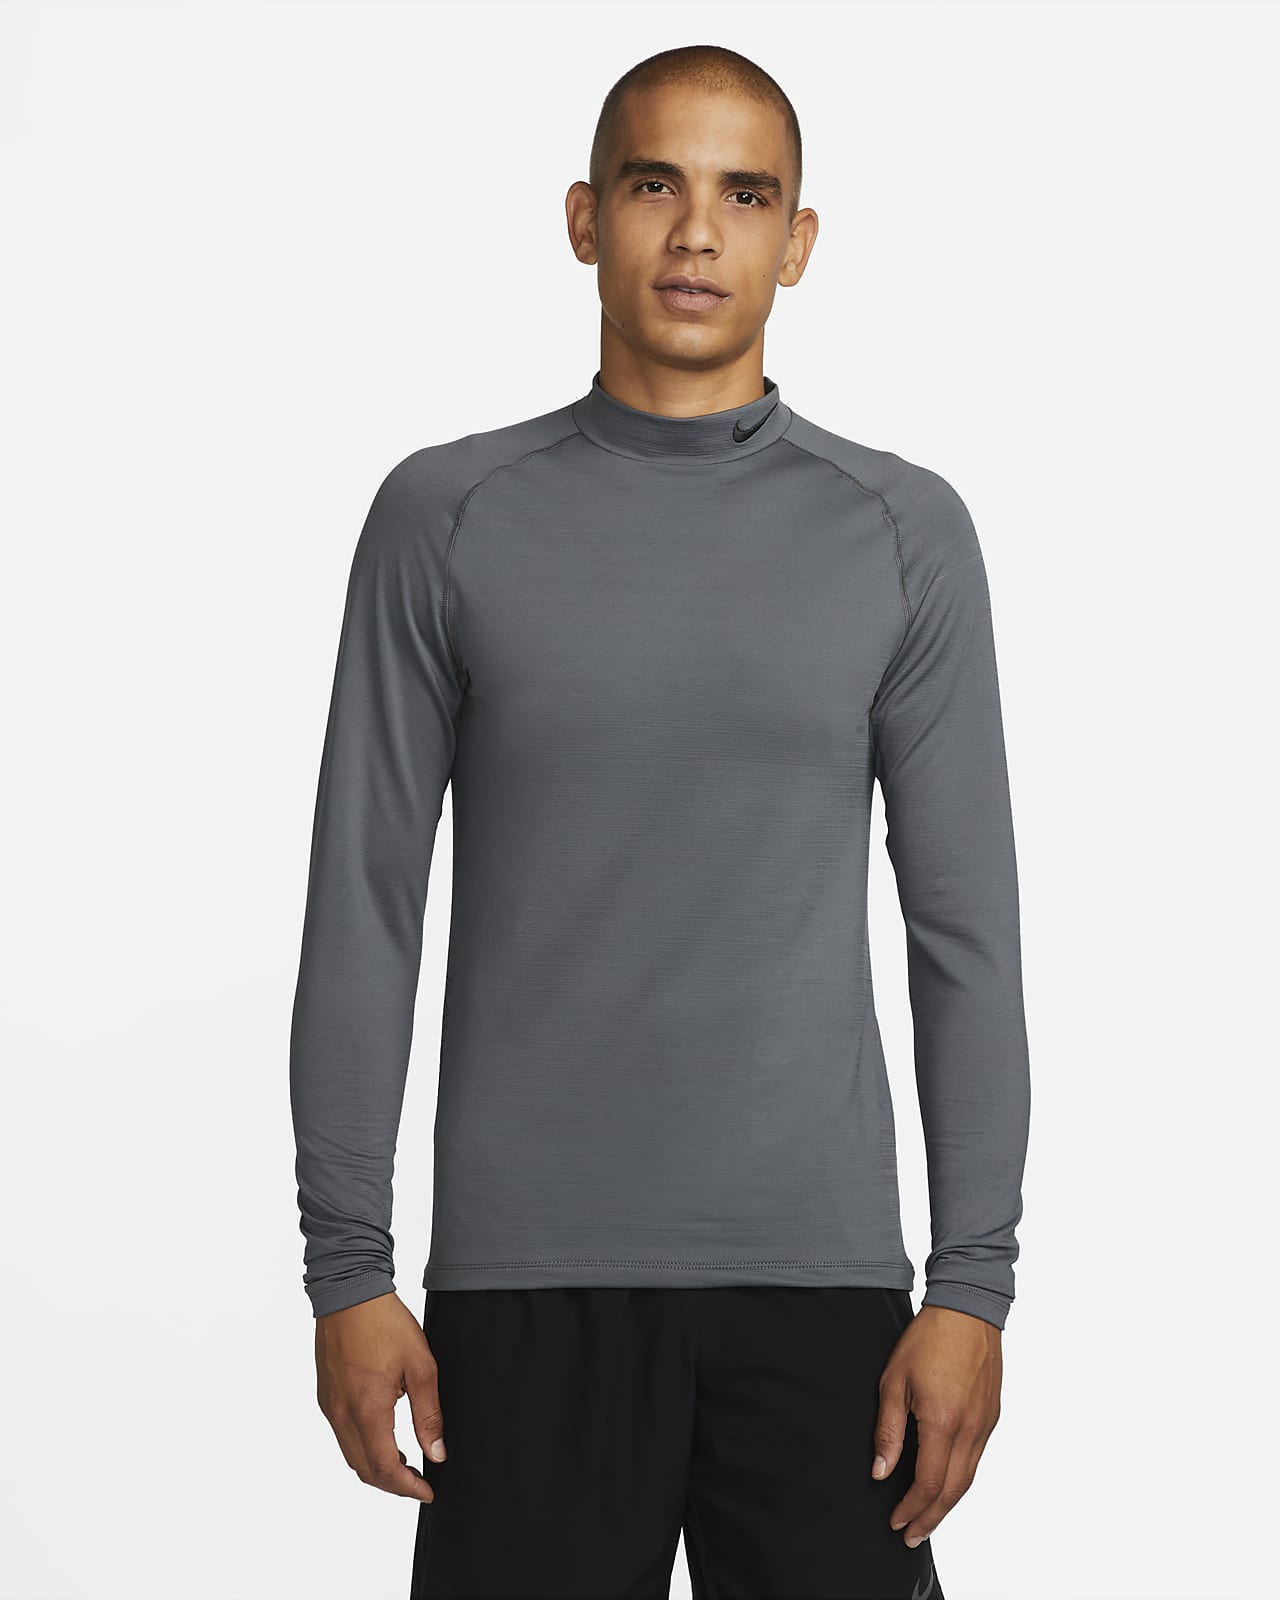 desayuno Duplicación efectivo Nike Pro Warm Men's Long-Sleeve Mock-Neck Training Top. Nike GB